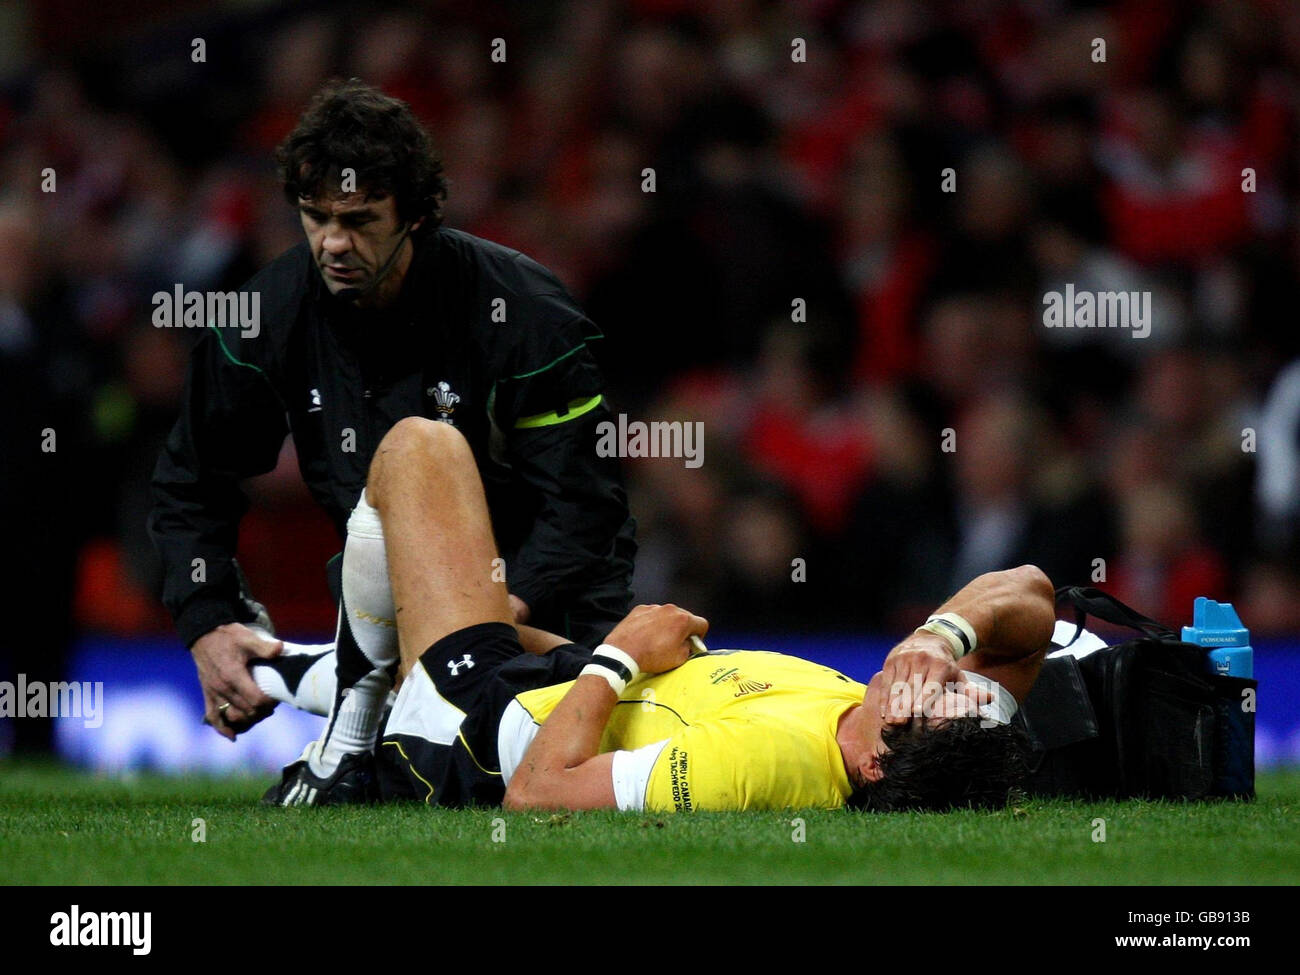 James Hook, de Gales, es tratado por el fisio Mark Davies durante el partido internacional en el Millennium Stadium, Cardiff. Foto de stock